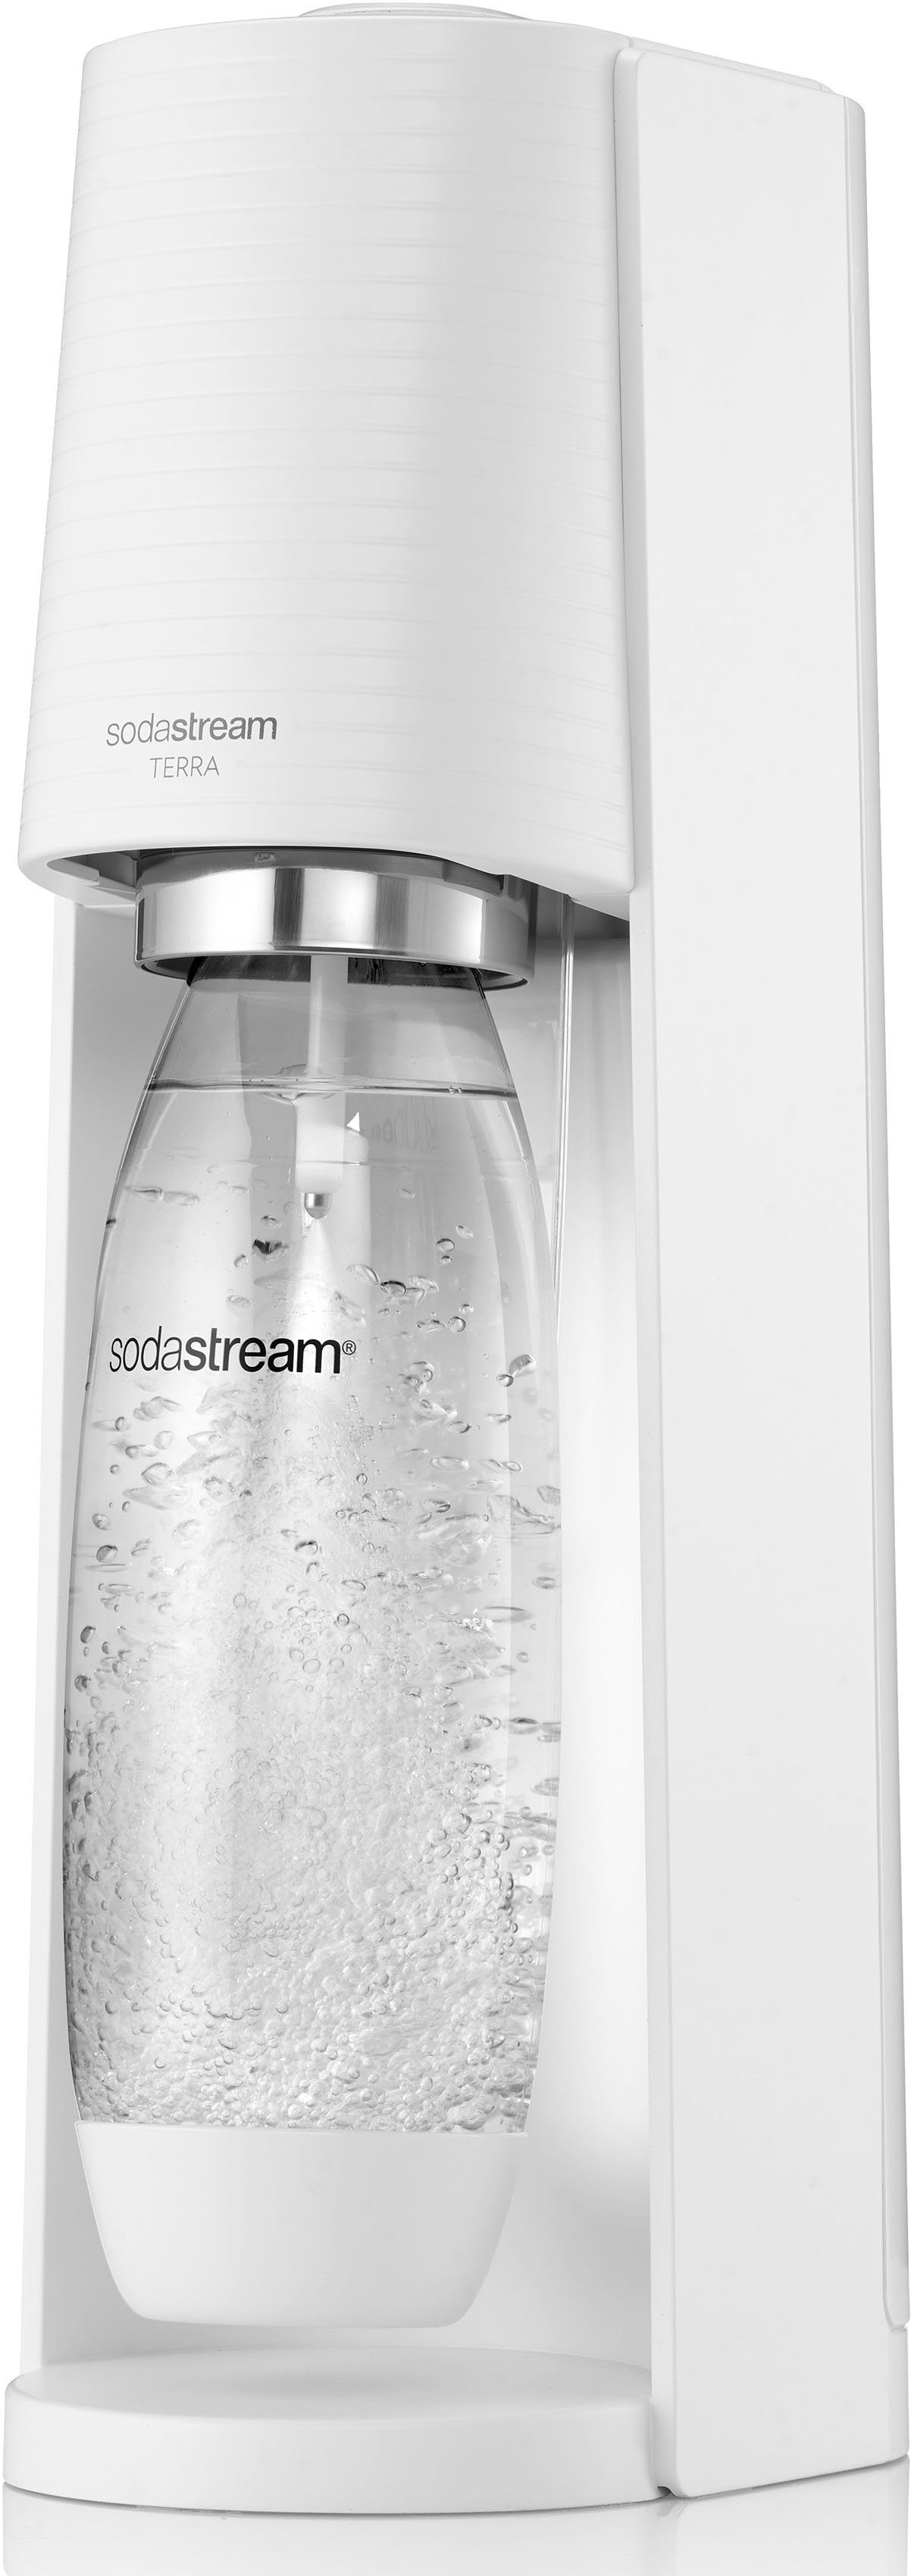 CO2-Zylinder spülmaschinenfeste weiß Wassersprudler 1L SodaStream Kunststoff-Flasche CQC, inkl. 1x 1x TERRA,